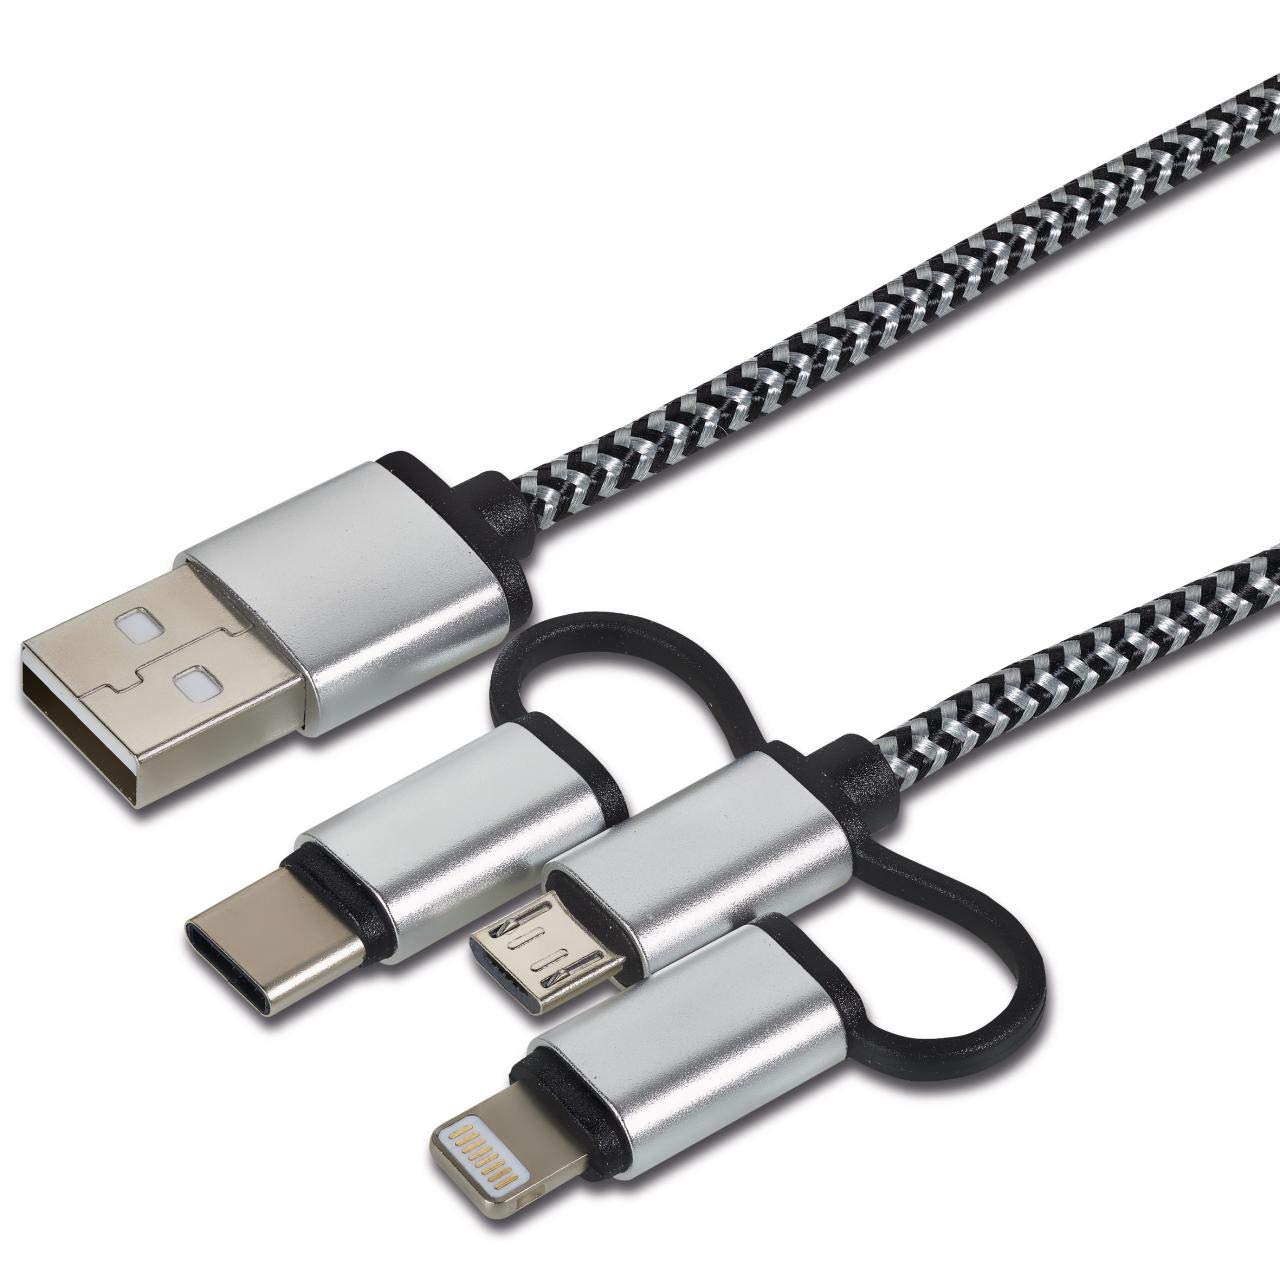 CARTREND 10407 Daten-und Ladekabel 3in1 Lightning, Micro Typ-C zu USB extrem Starke Strapazierfähigkeit durch nylongebundene Ummantelung für längere Lebensdauer, schwarz von cartrend